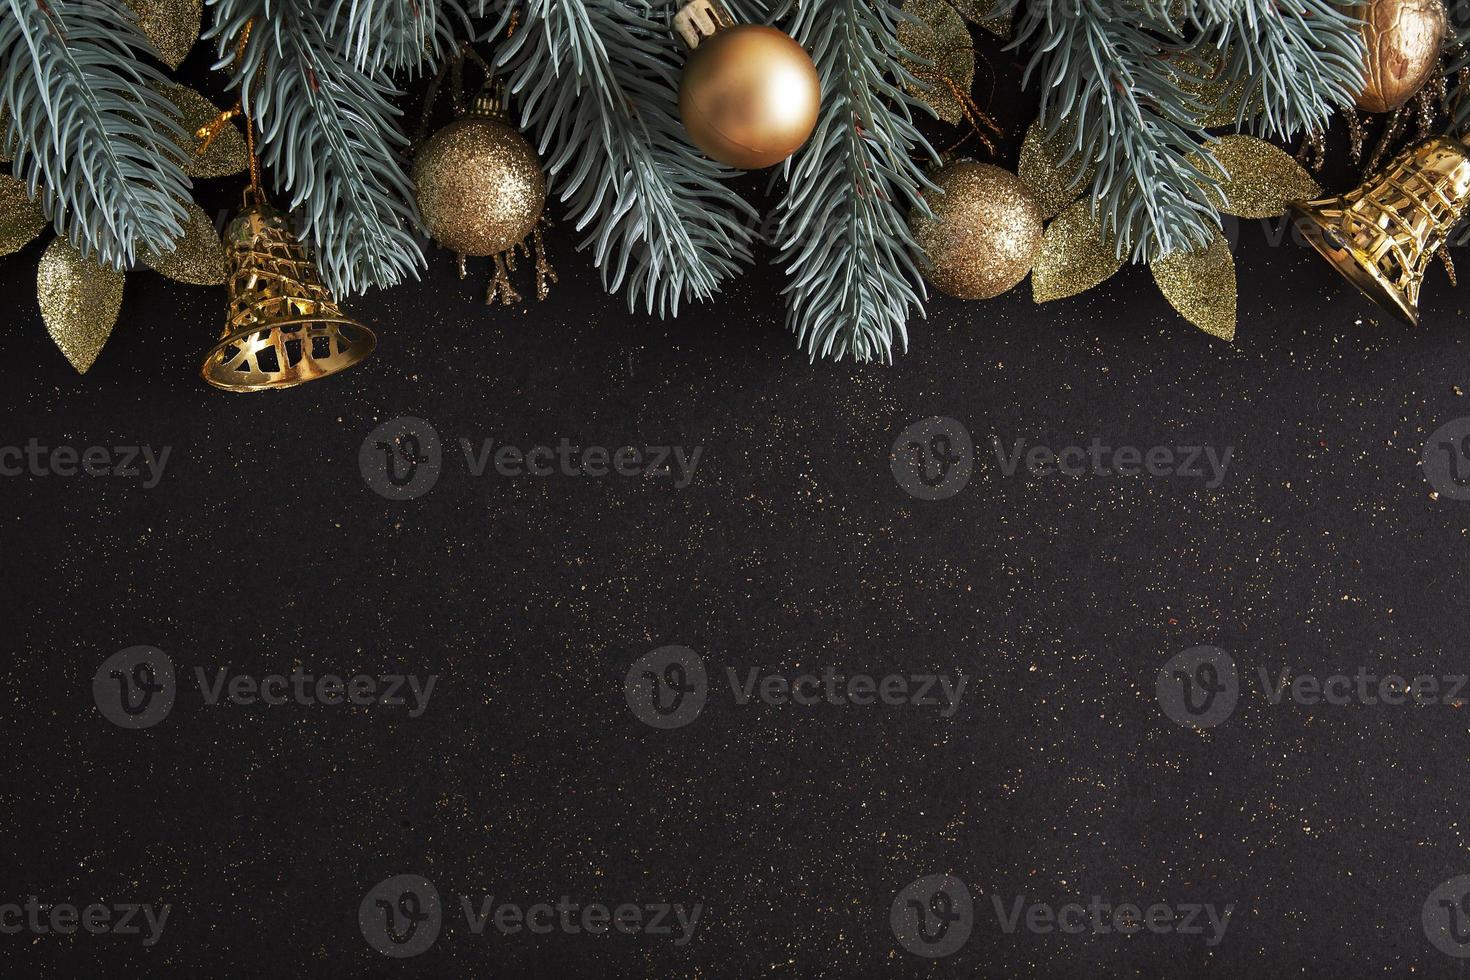 Diseño navideño con árboles de Navidad, adornos de oro y campanas sobre fondo negro foto